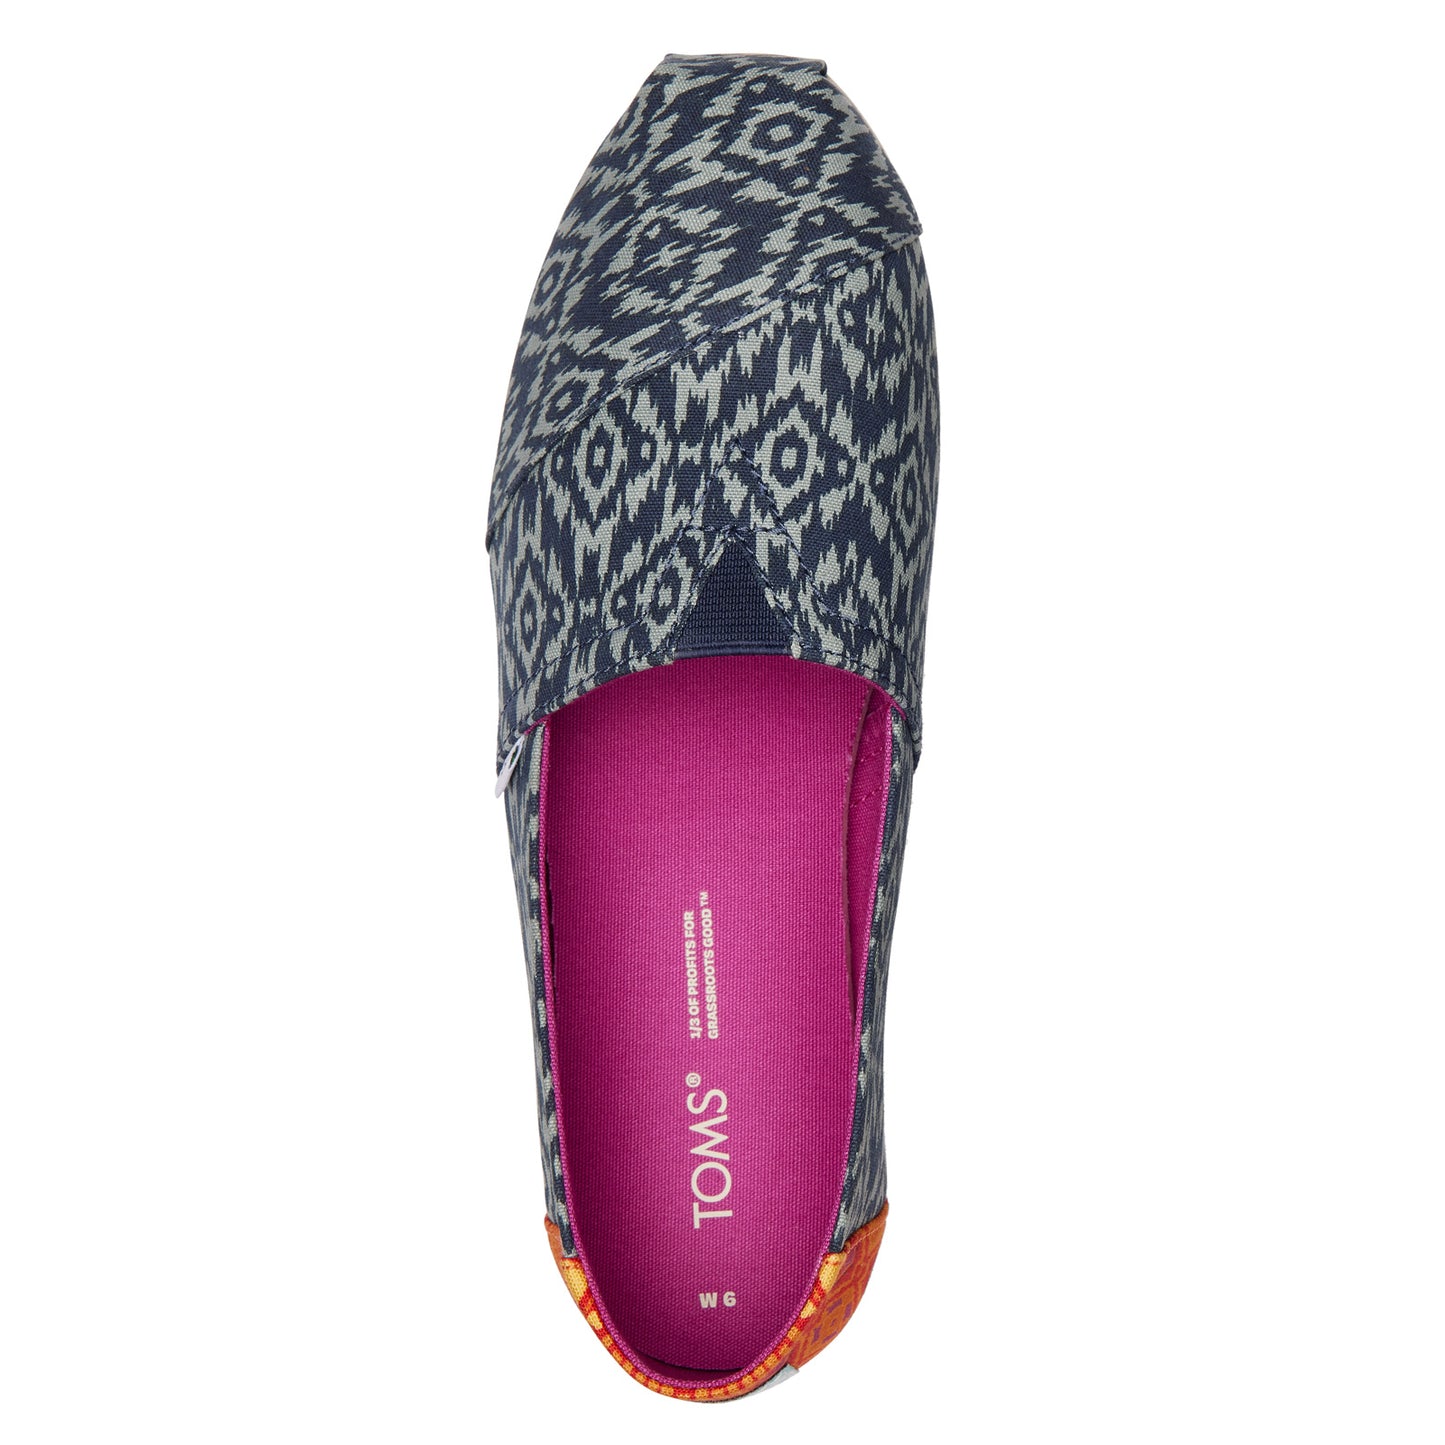 Peltz Shoes  Women's Toms Alpargata Slip-On IKAT NAVY 10018762